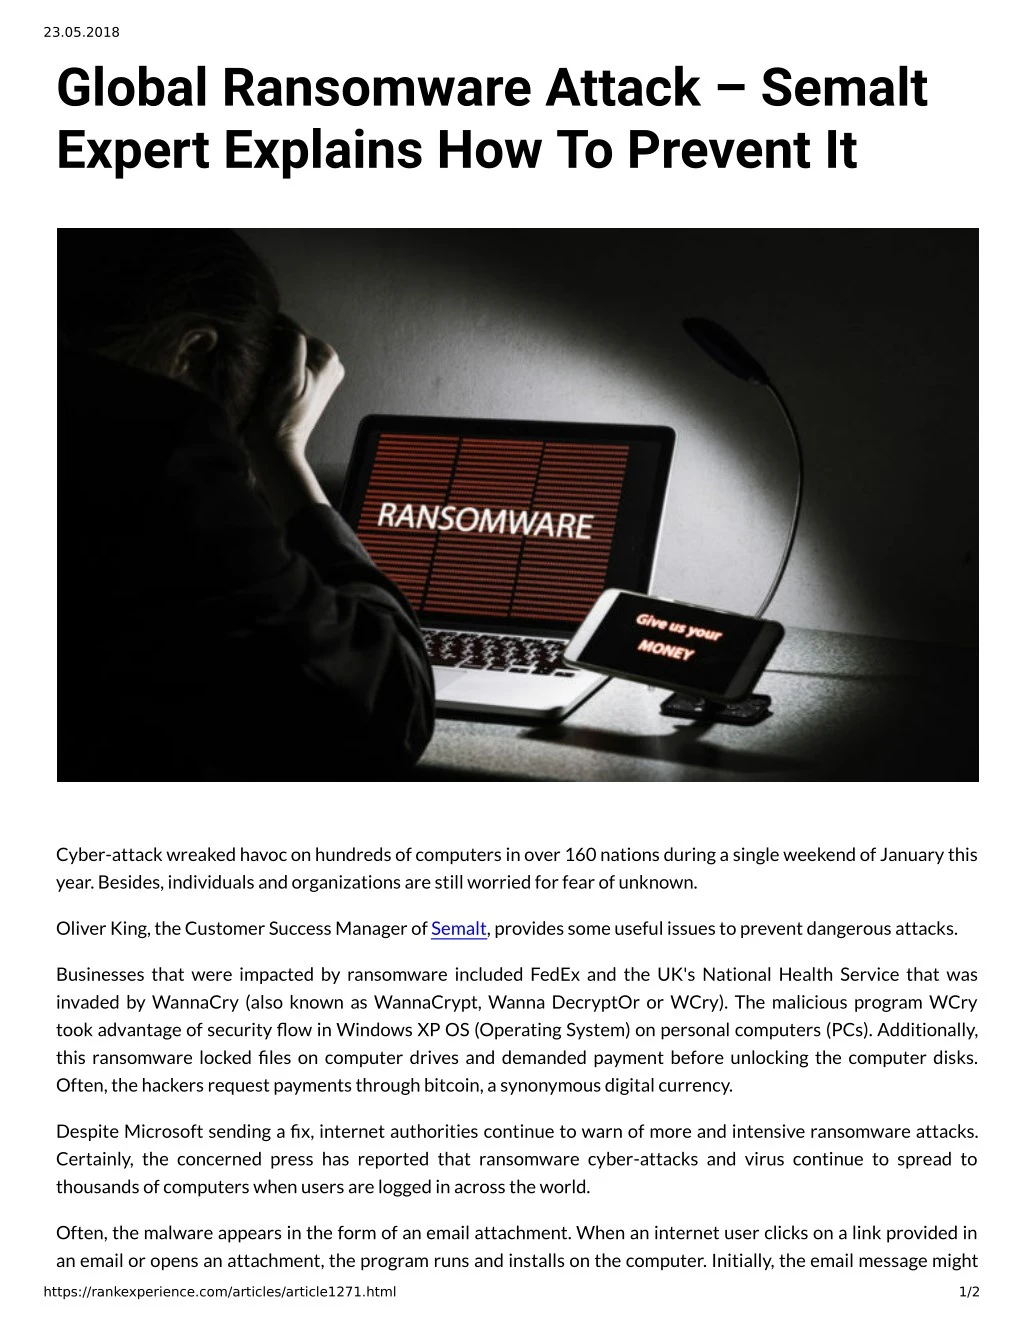 23 05 2018 global ransomware attack semalt expert